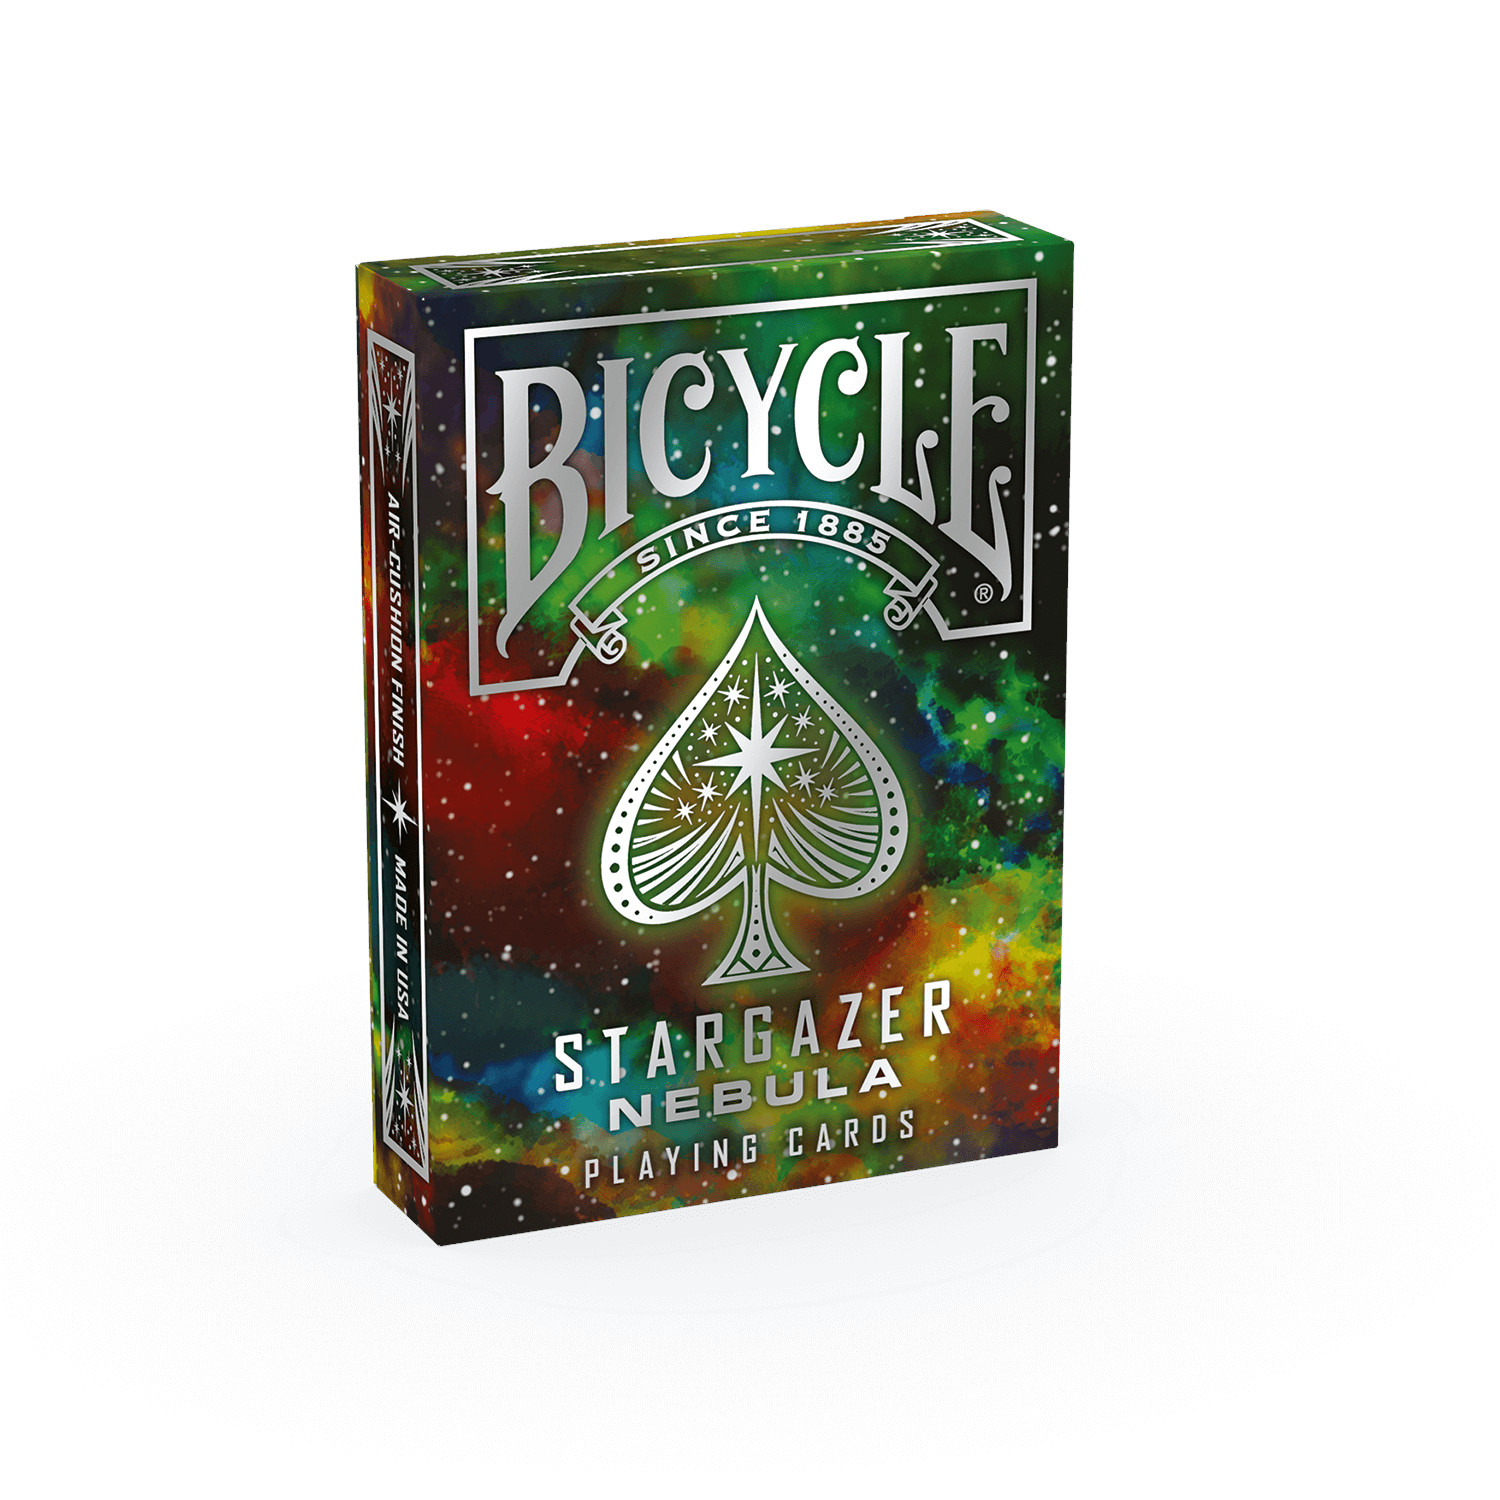 ASS ALTENBURGER Bicycle Kartendeck - Stargazer Nebula Kartenspiel